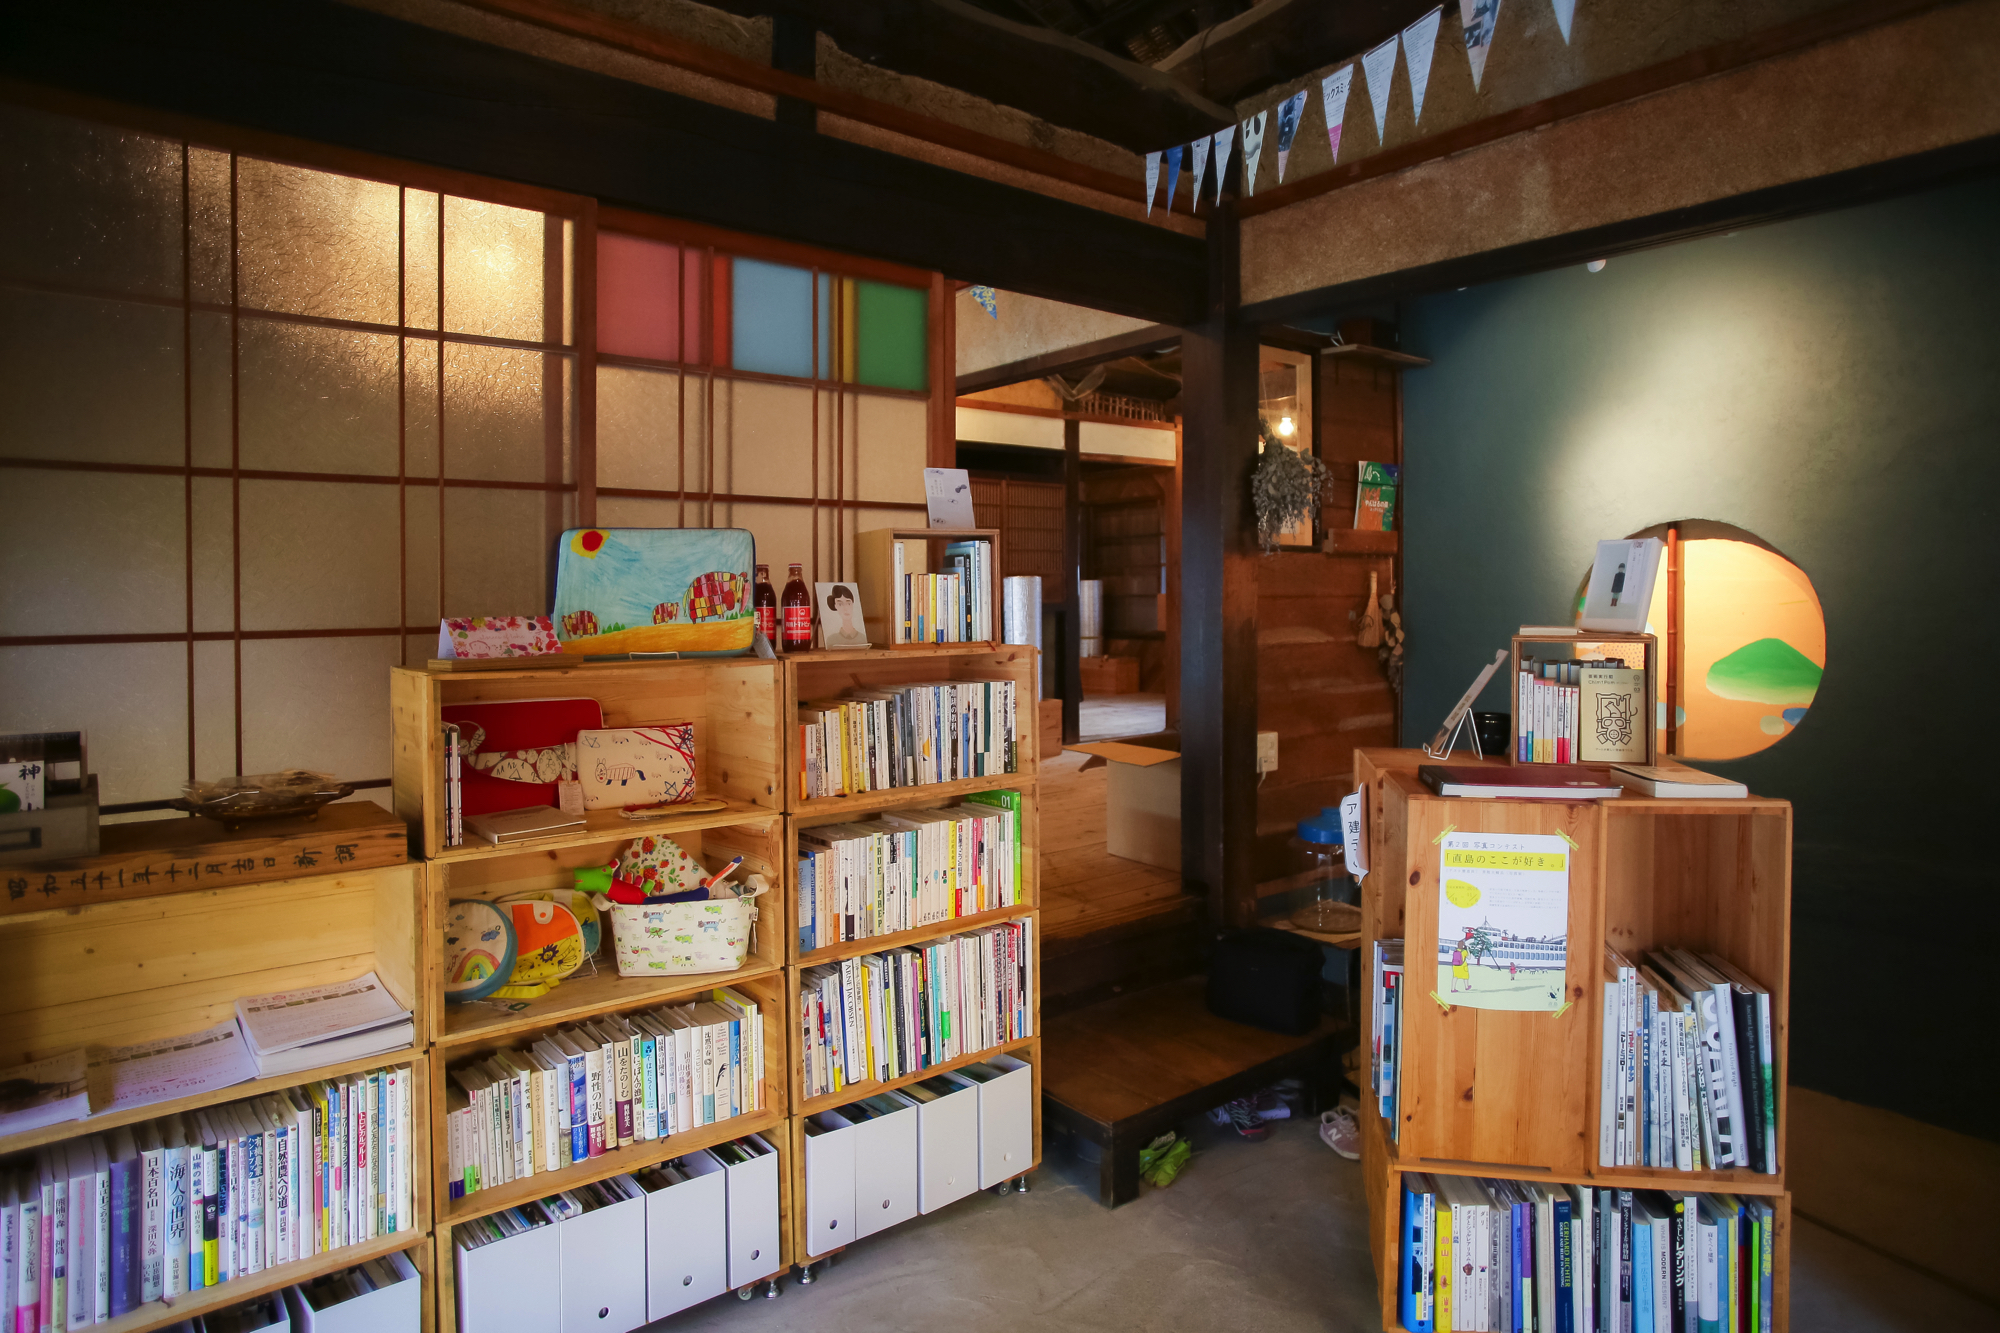 こちらがshimacoya bunco。机と椅子があるため、コーヒーを片手に本を眺めることも。（撮影:yunico）